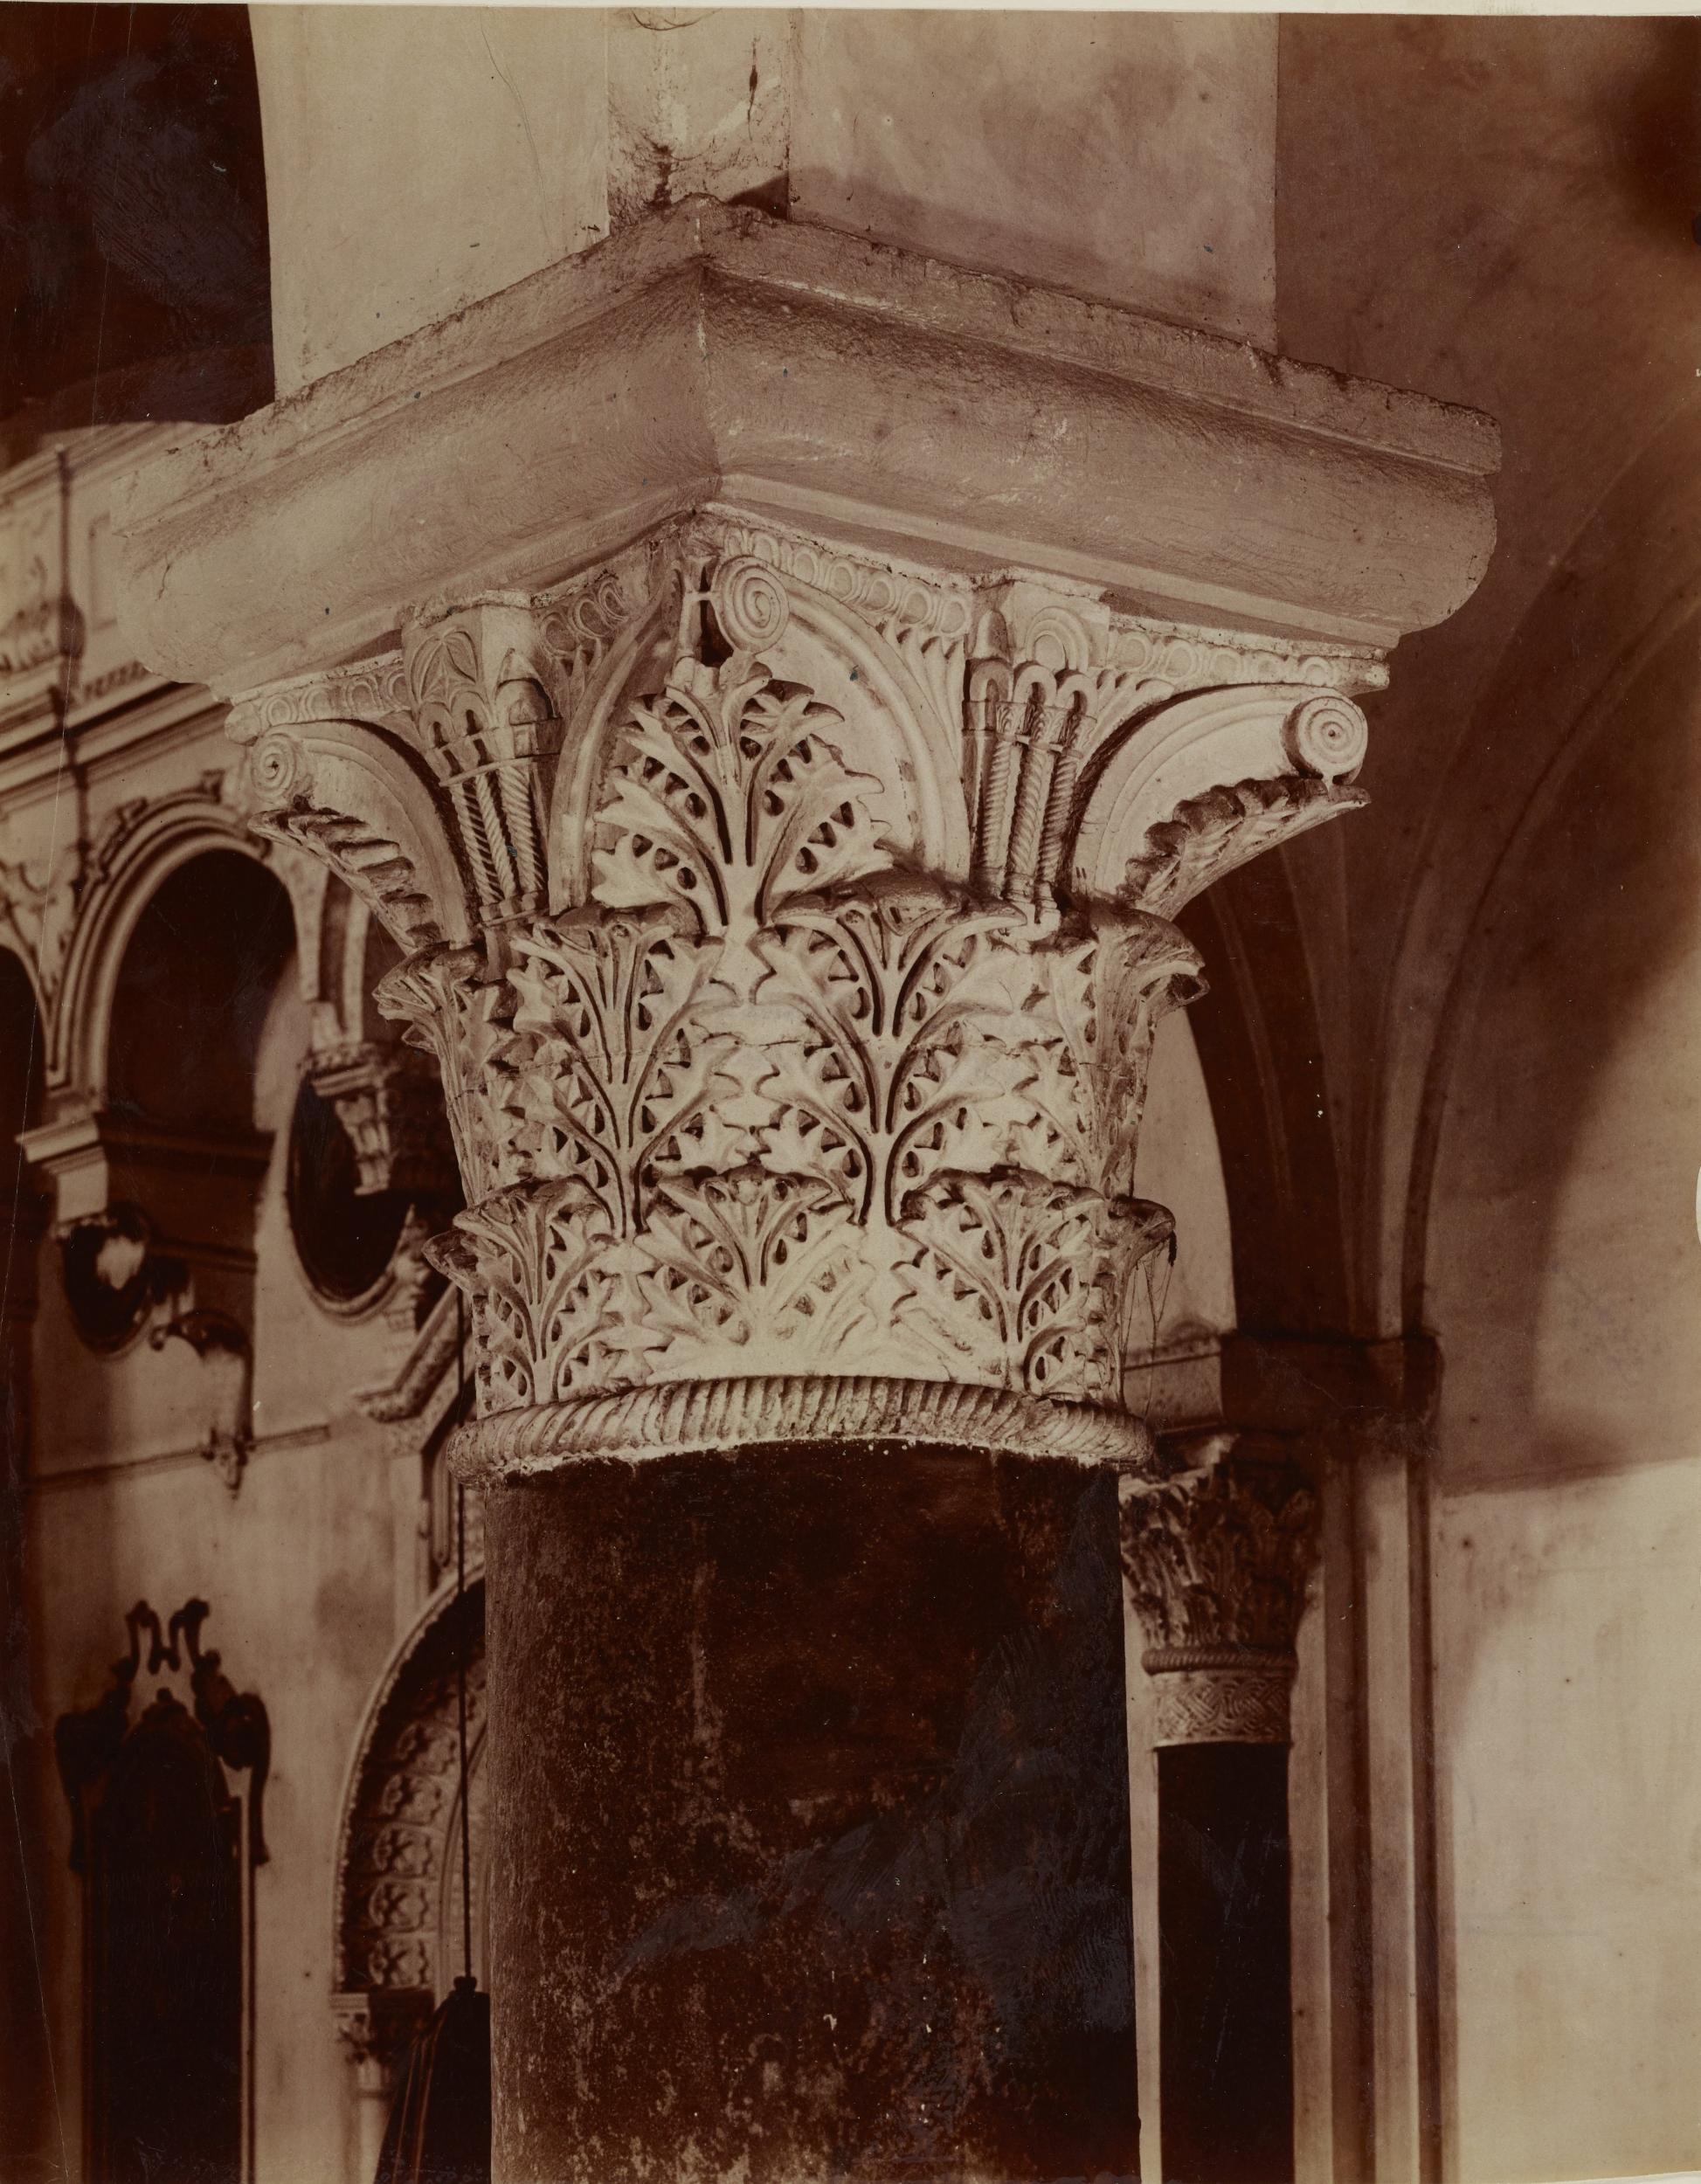 Fotografo non identificato, Bari - Basilica di S. Nicola, navata centrale, capitello a foglie di acanto spinoso, 1891-1910, albumina/carta, MPI136807